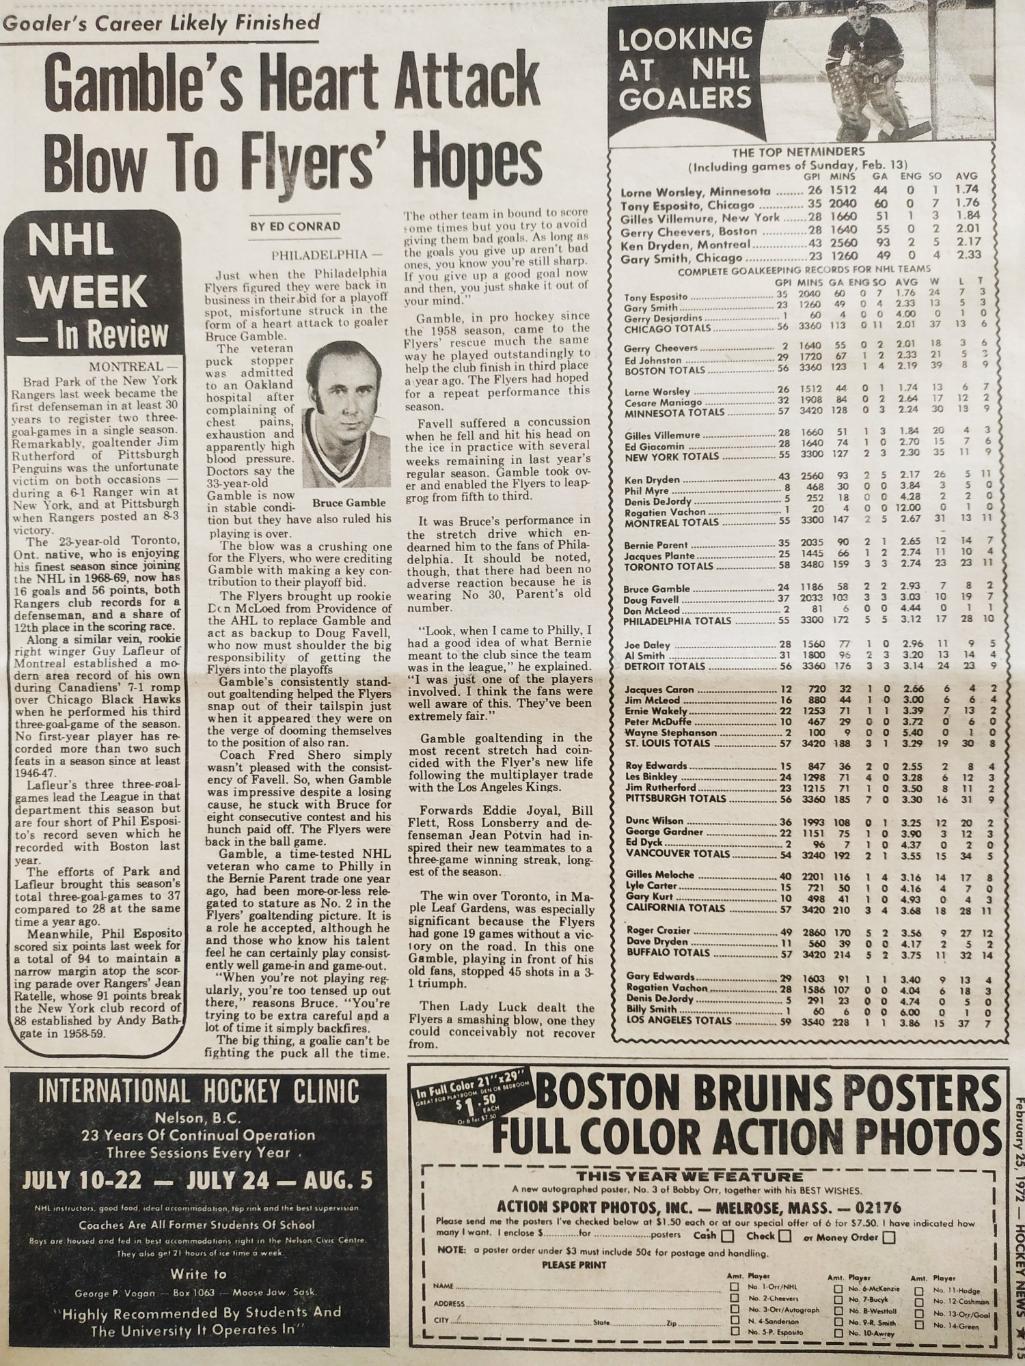 ХОККЕЙ ЖУРНАЛ ЕЖЕНЕДЕЛЬНИК НХЛ НОВОСТИ ХОККЕЯ FEB.25 1972 NHL THE HOCKEY NEWS 5